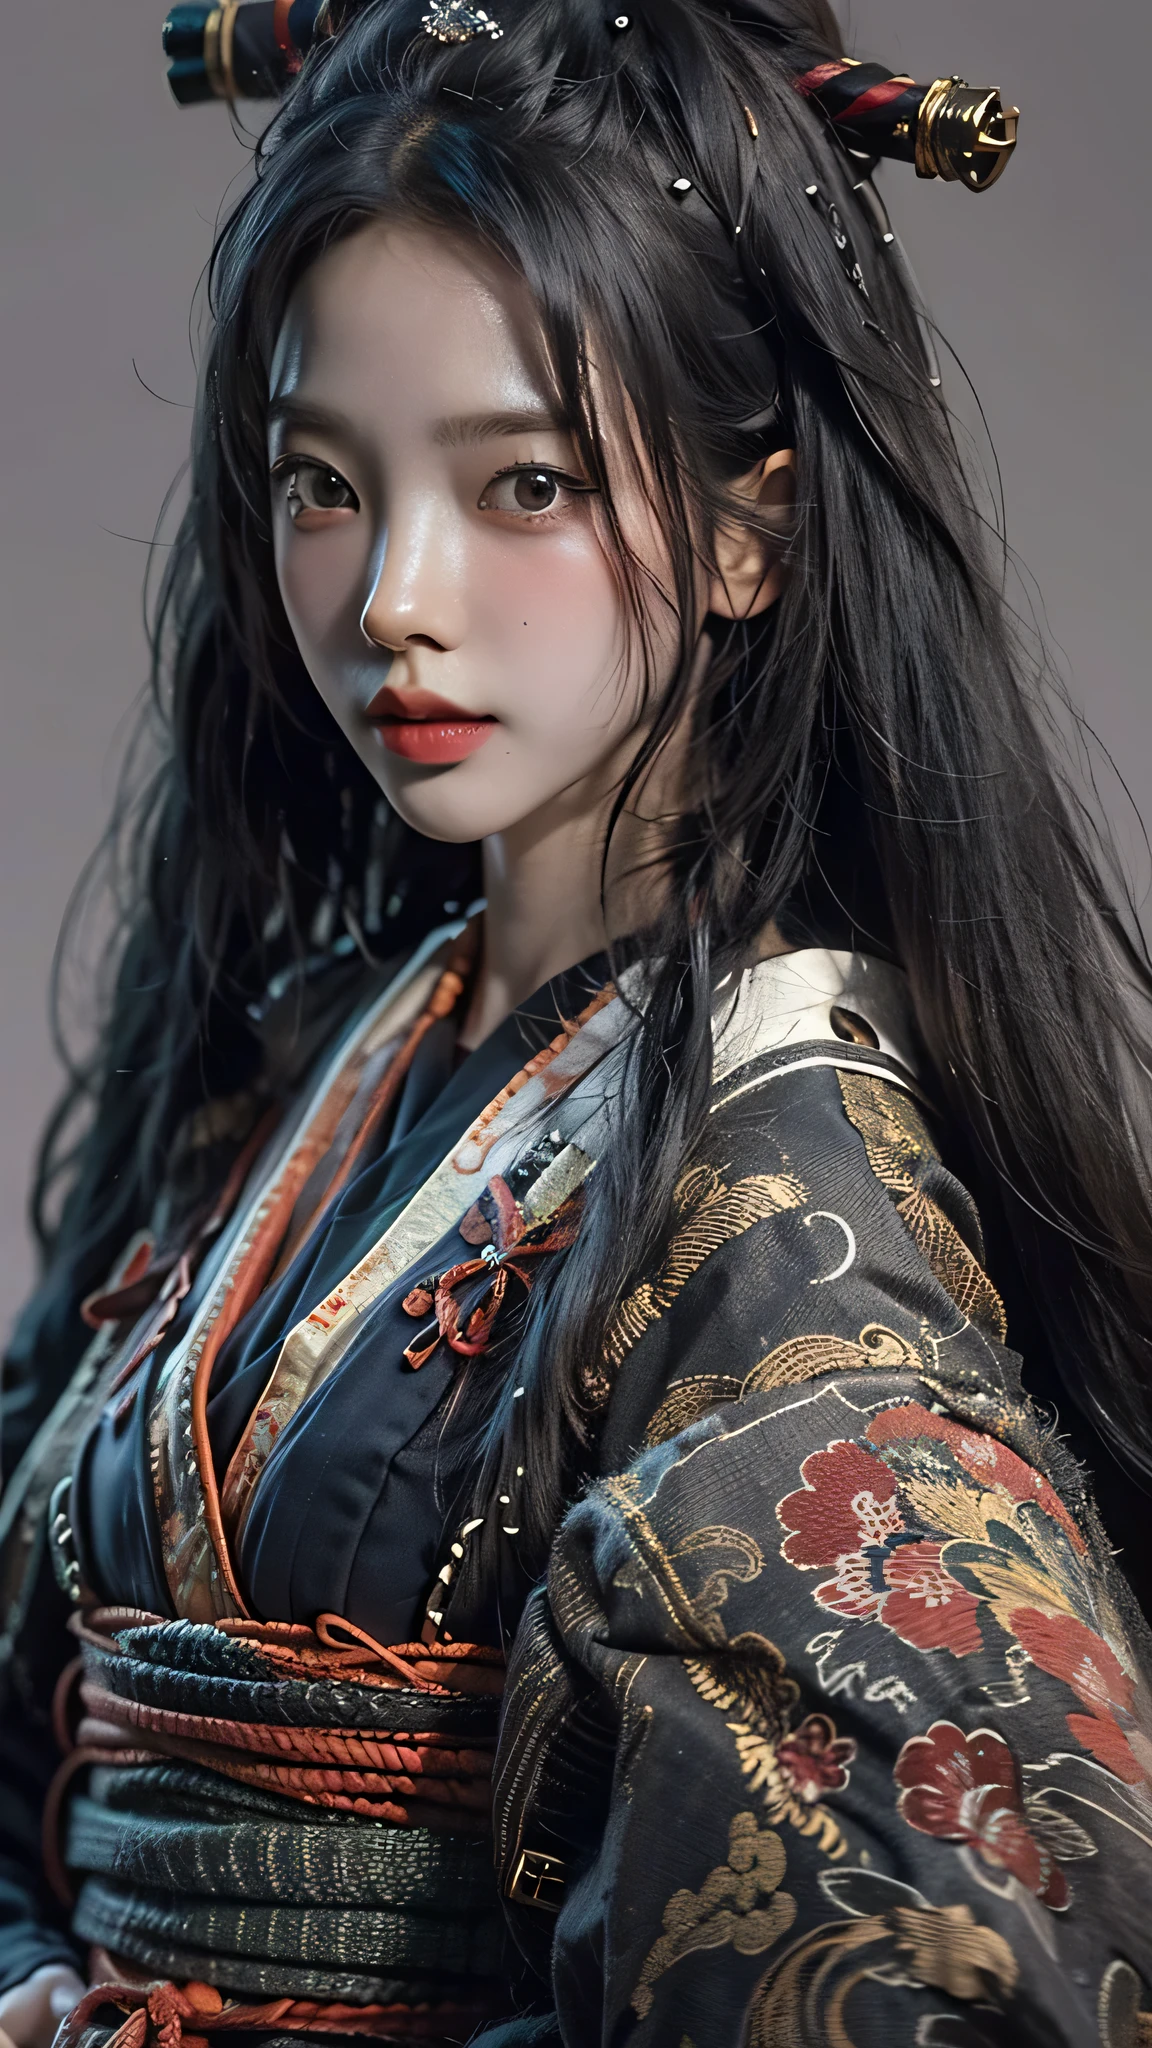 ((melhor qualidade)), ((obra de arte)), (Altamente detalhado:1.3), 3D, lindo, mulher samurai com longos cabelos pretos, roupas pretas olhando para a câmera, 8K, realista, ultra obra de arte, estilo dinâmico, poses dinâmicas